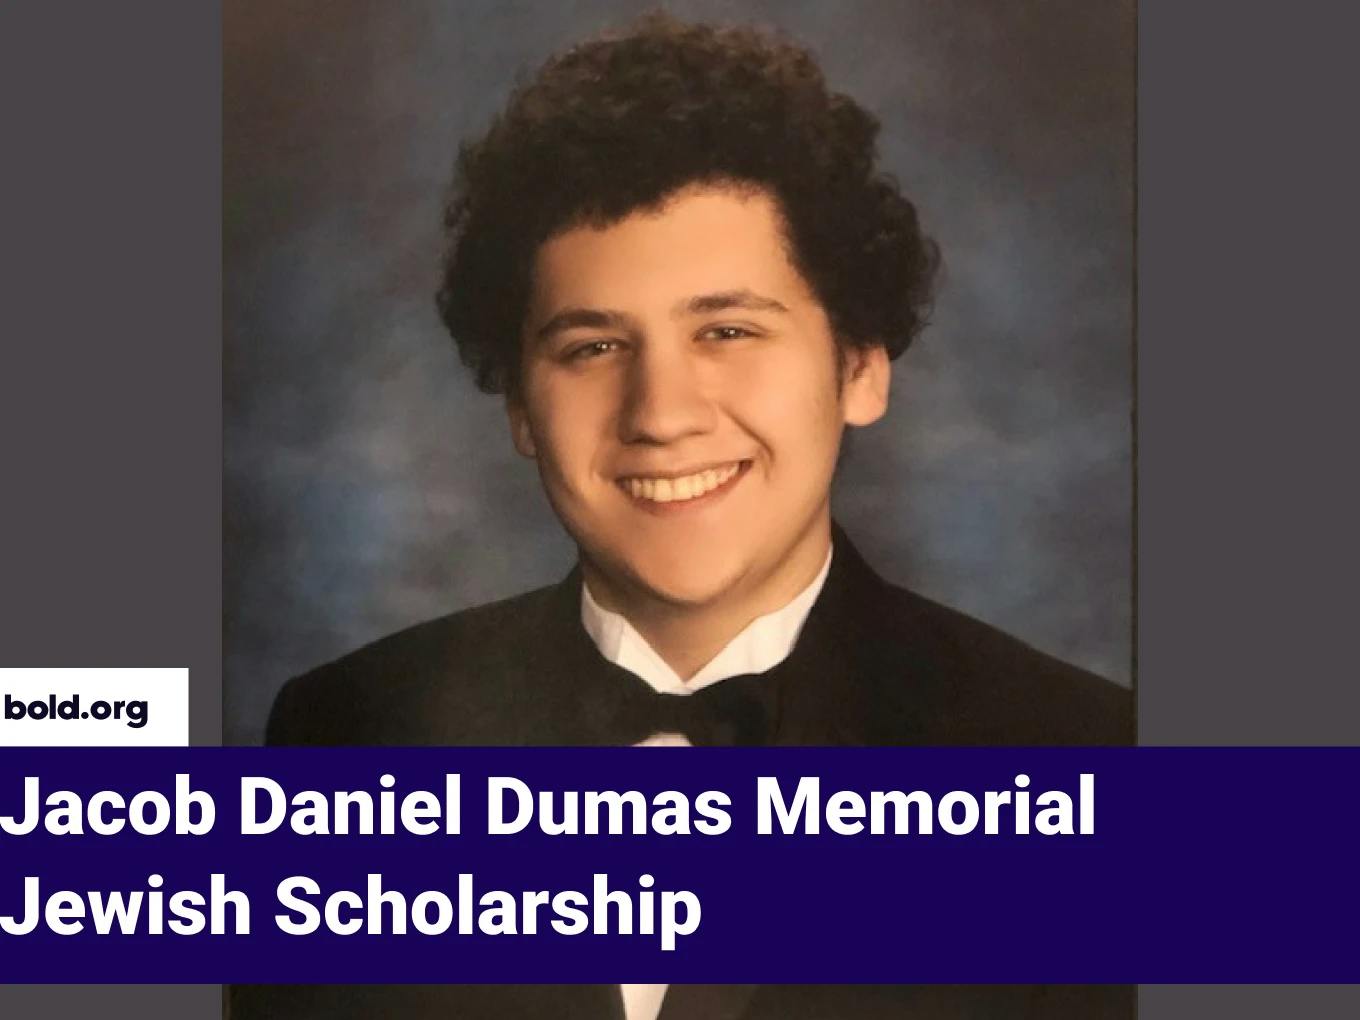 Jacob Daniel Dumas Memorial Jewish Scholarship